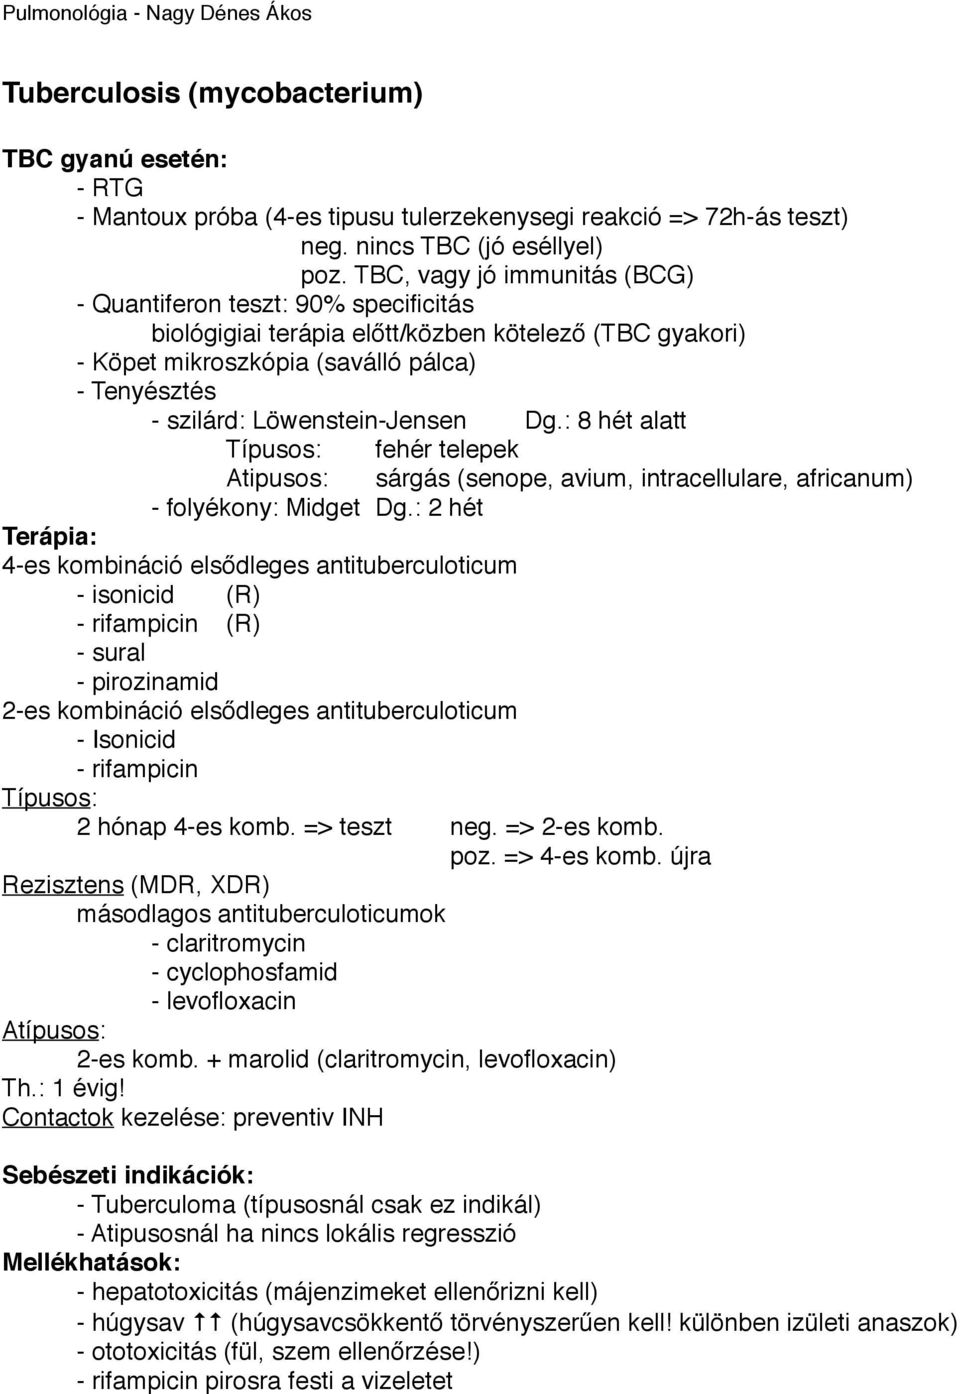 Pneumonia Típusos Atipusos. subfebrilitás (vagy nincs) - PDF ...